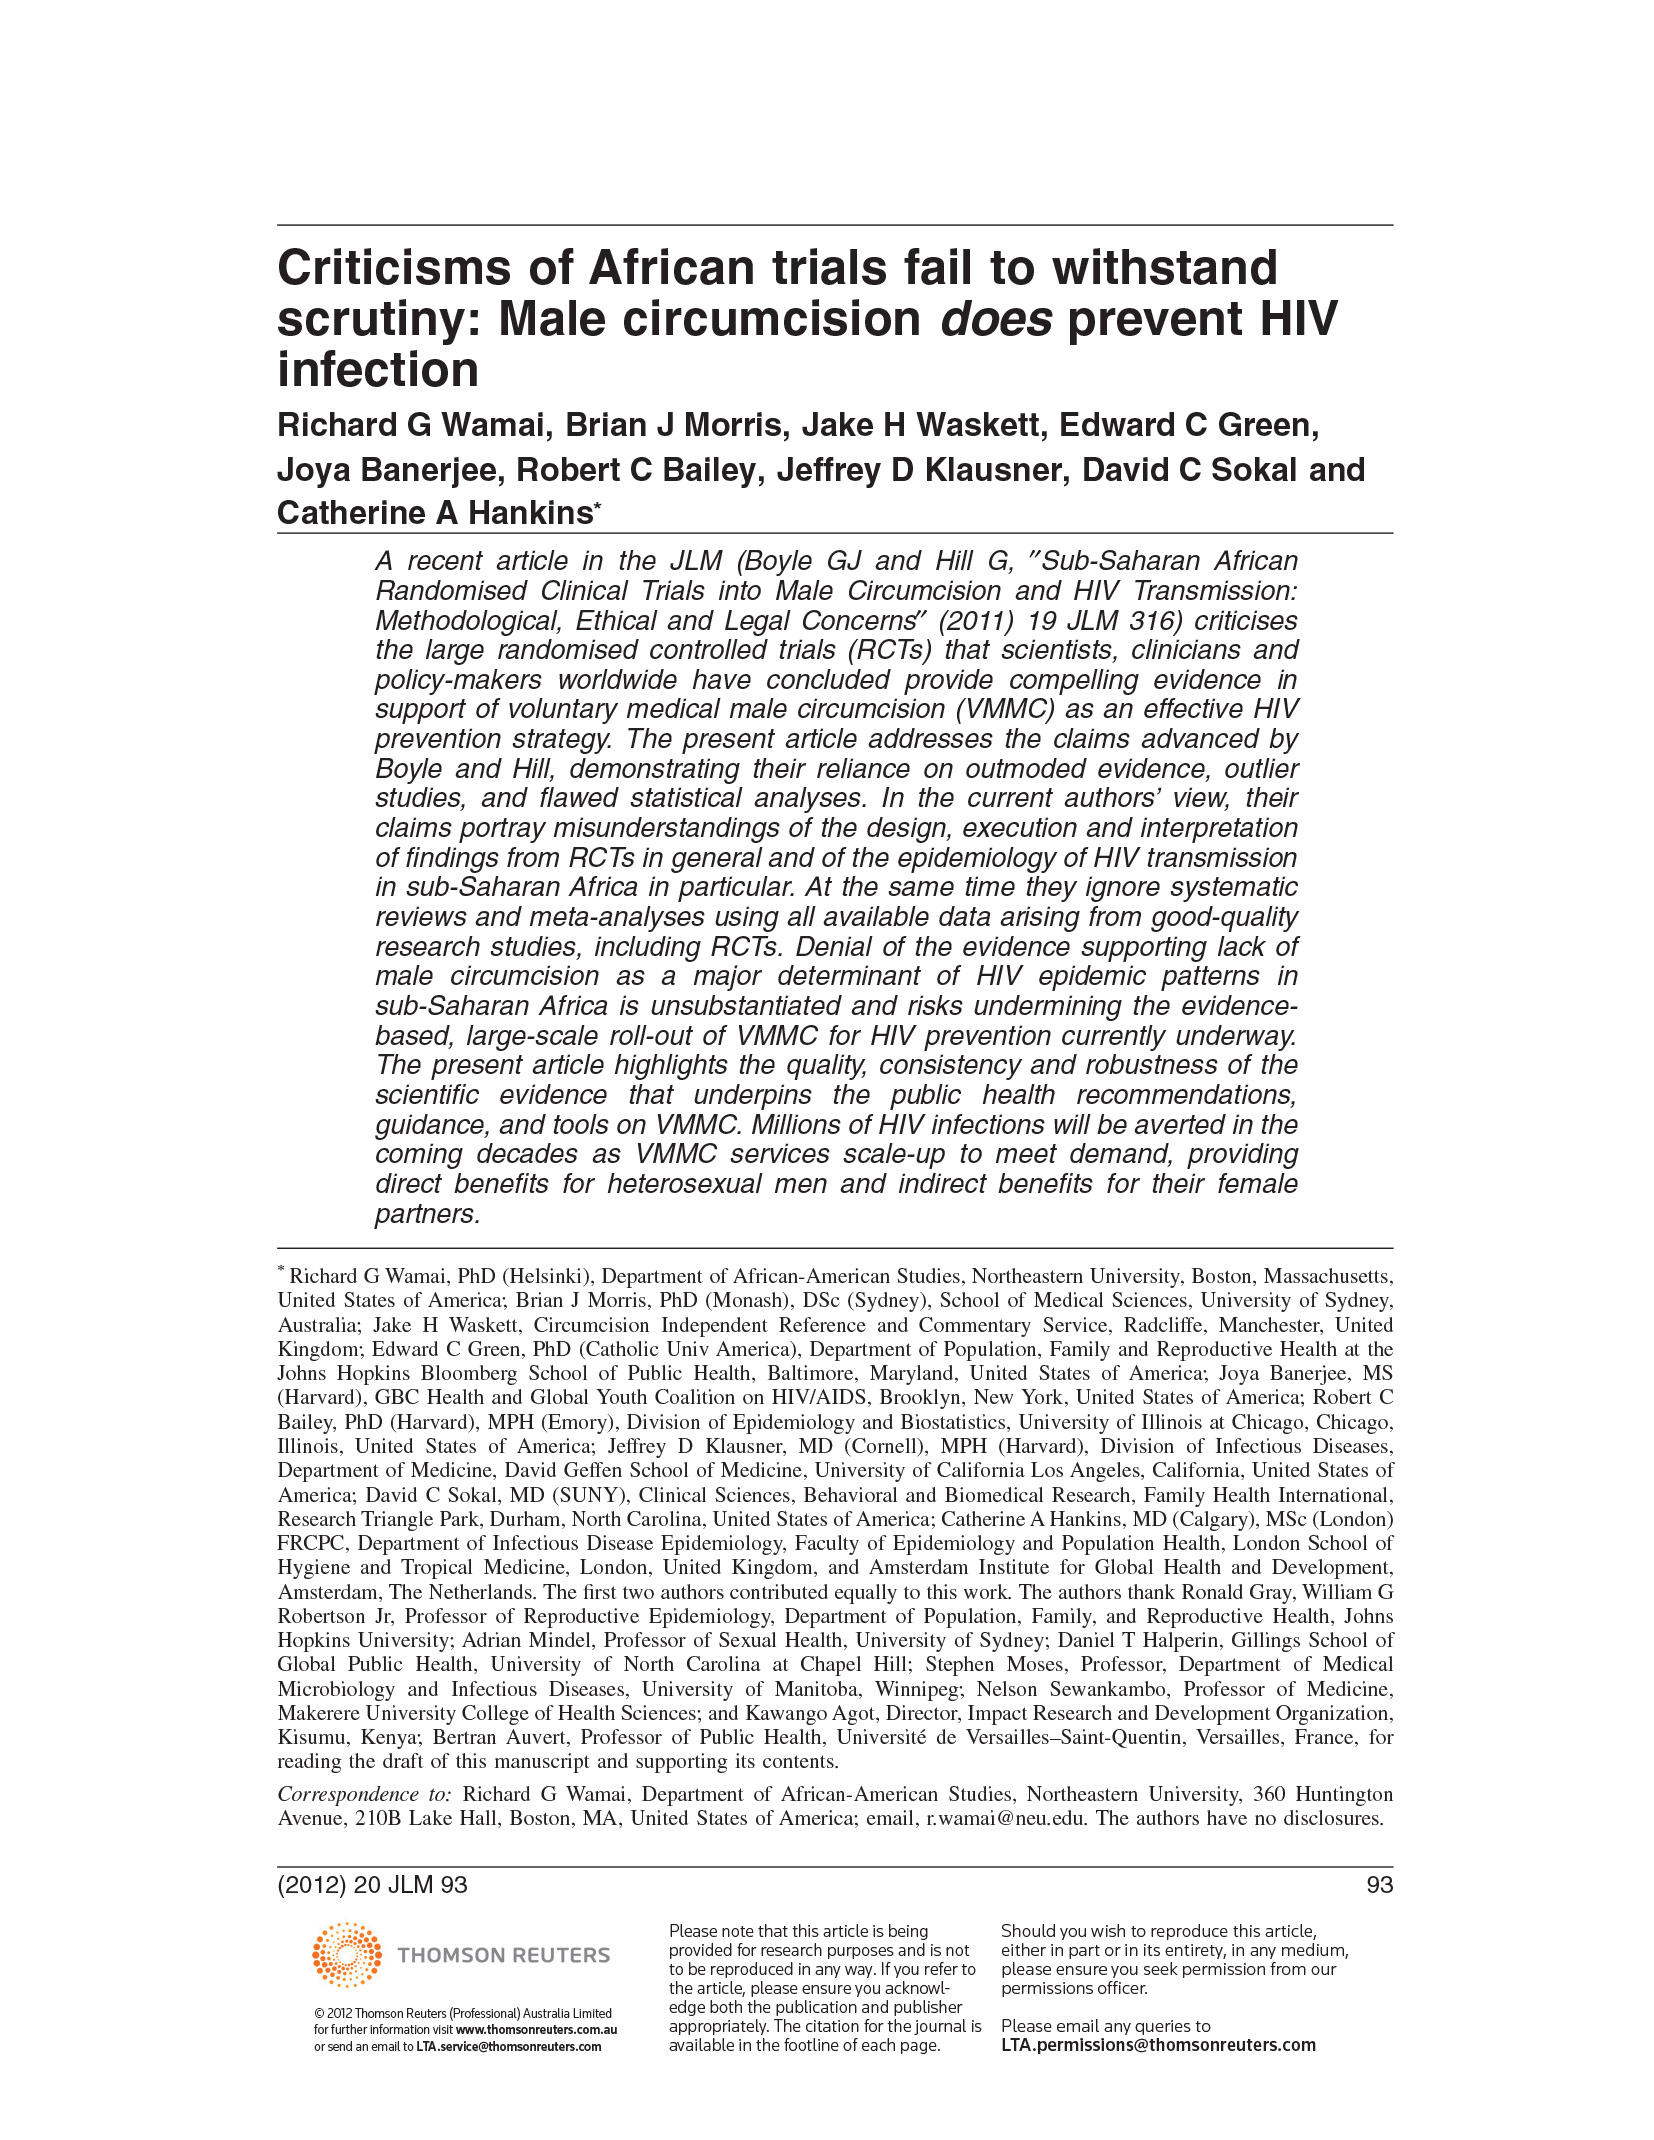 As críticas aos ensaios africanos não resistem a um exame minucioso: A circuncisão masculina previne a infeção pelo VIH - capa